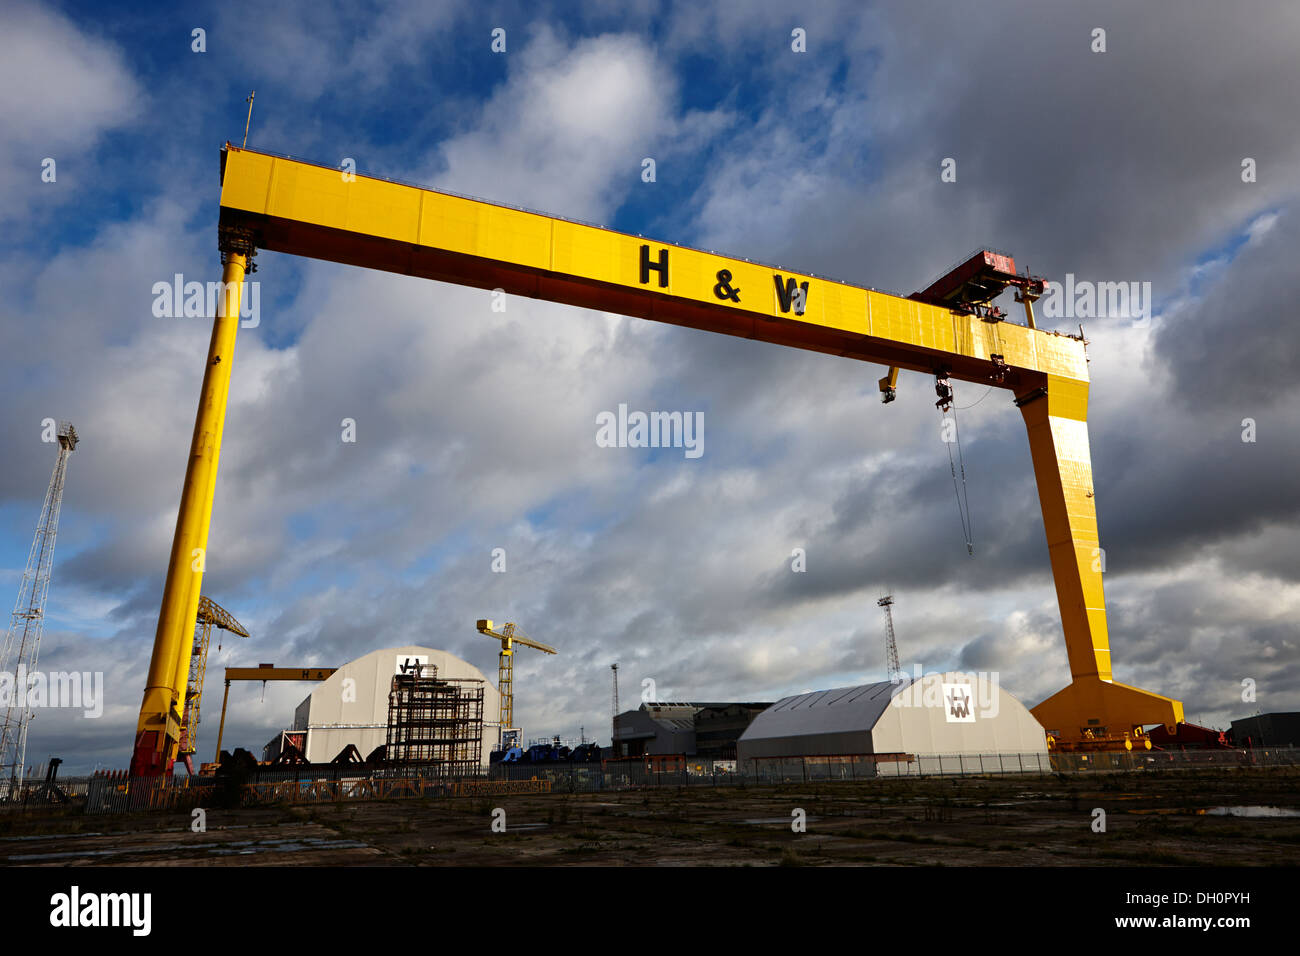 Les grues de chantier naval Harland and Wolff de Belfast Titanic Quarter L'Irlande du Nord Banque D'Images